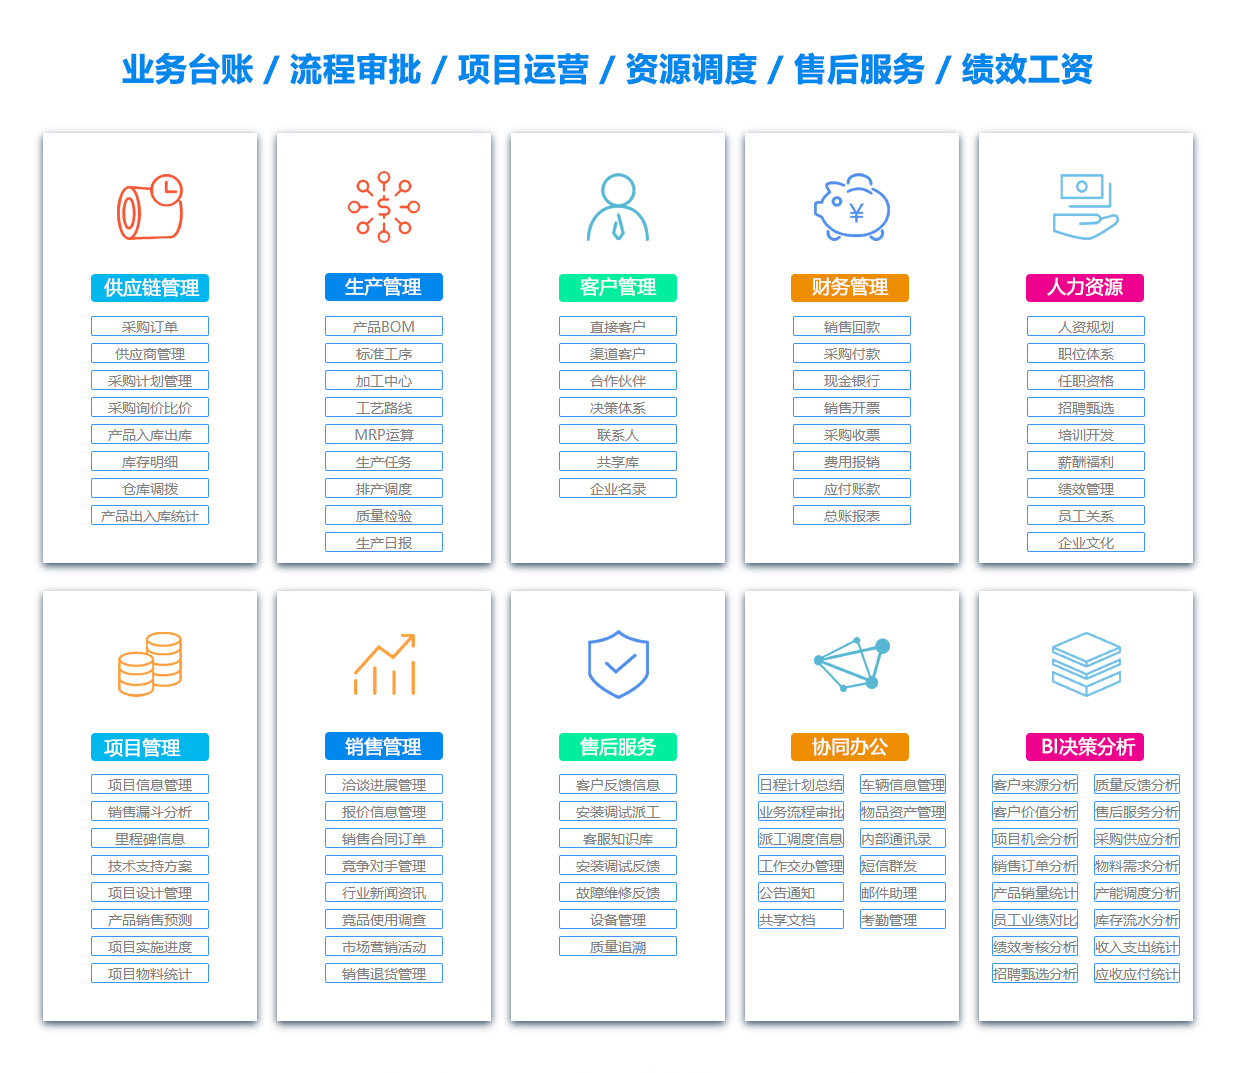 荆州BOM:物料清单软件